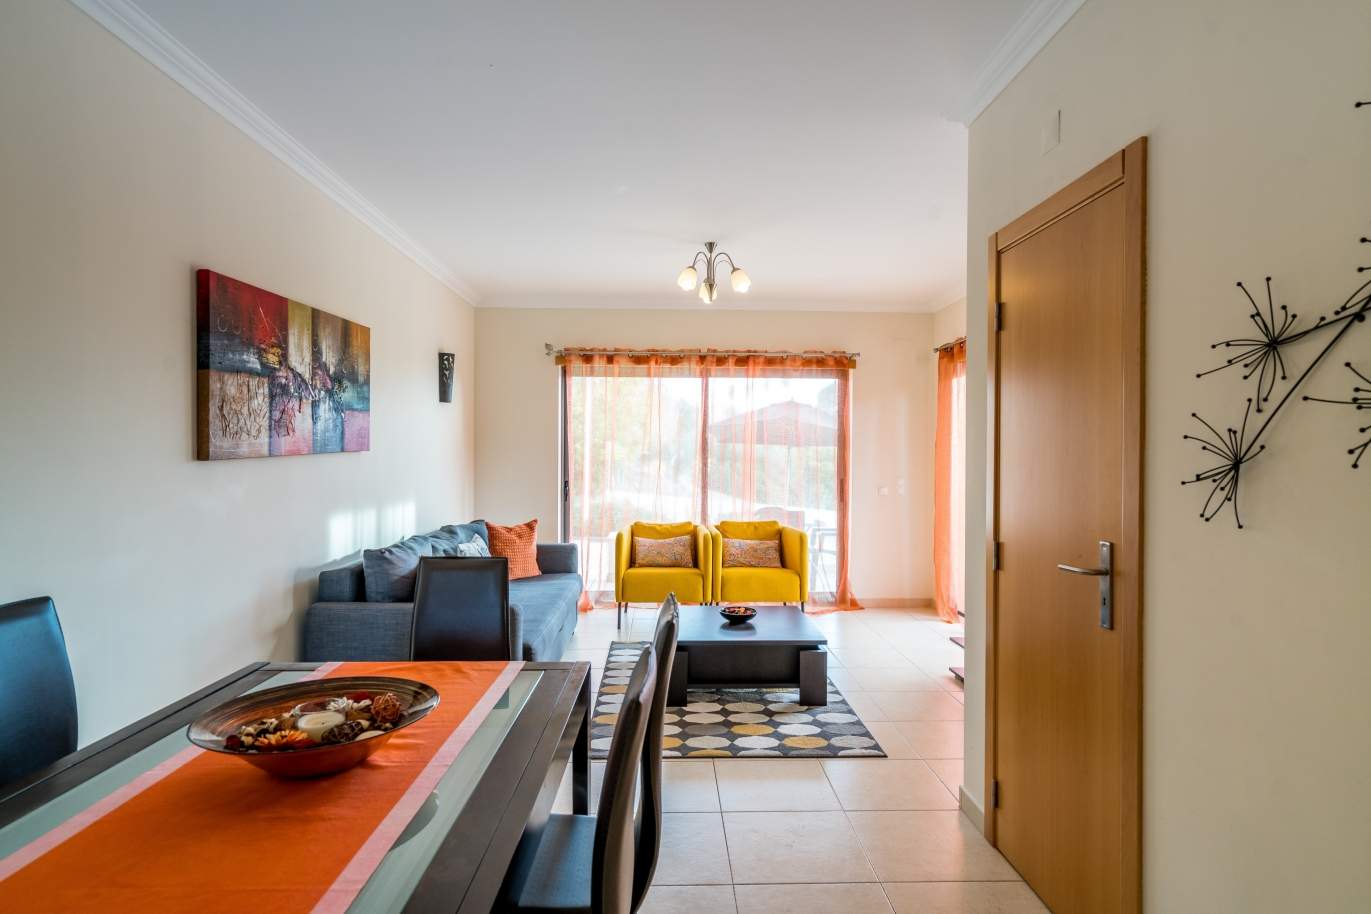 Sale of villa in private condominium in Albufeira, Algarve, Portugal_126882